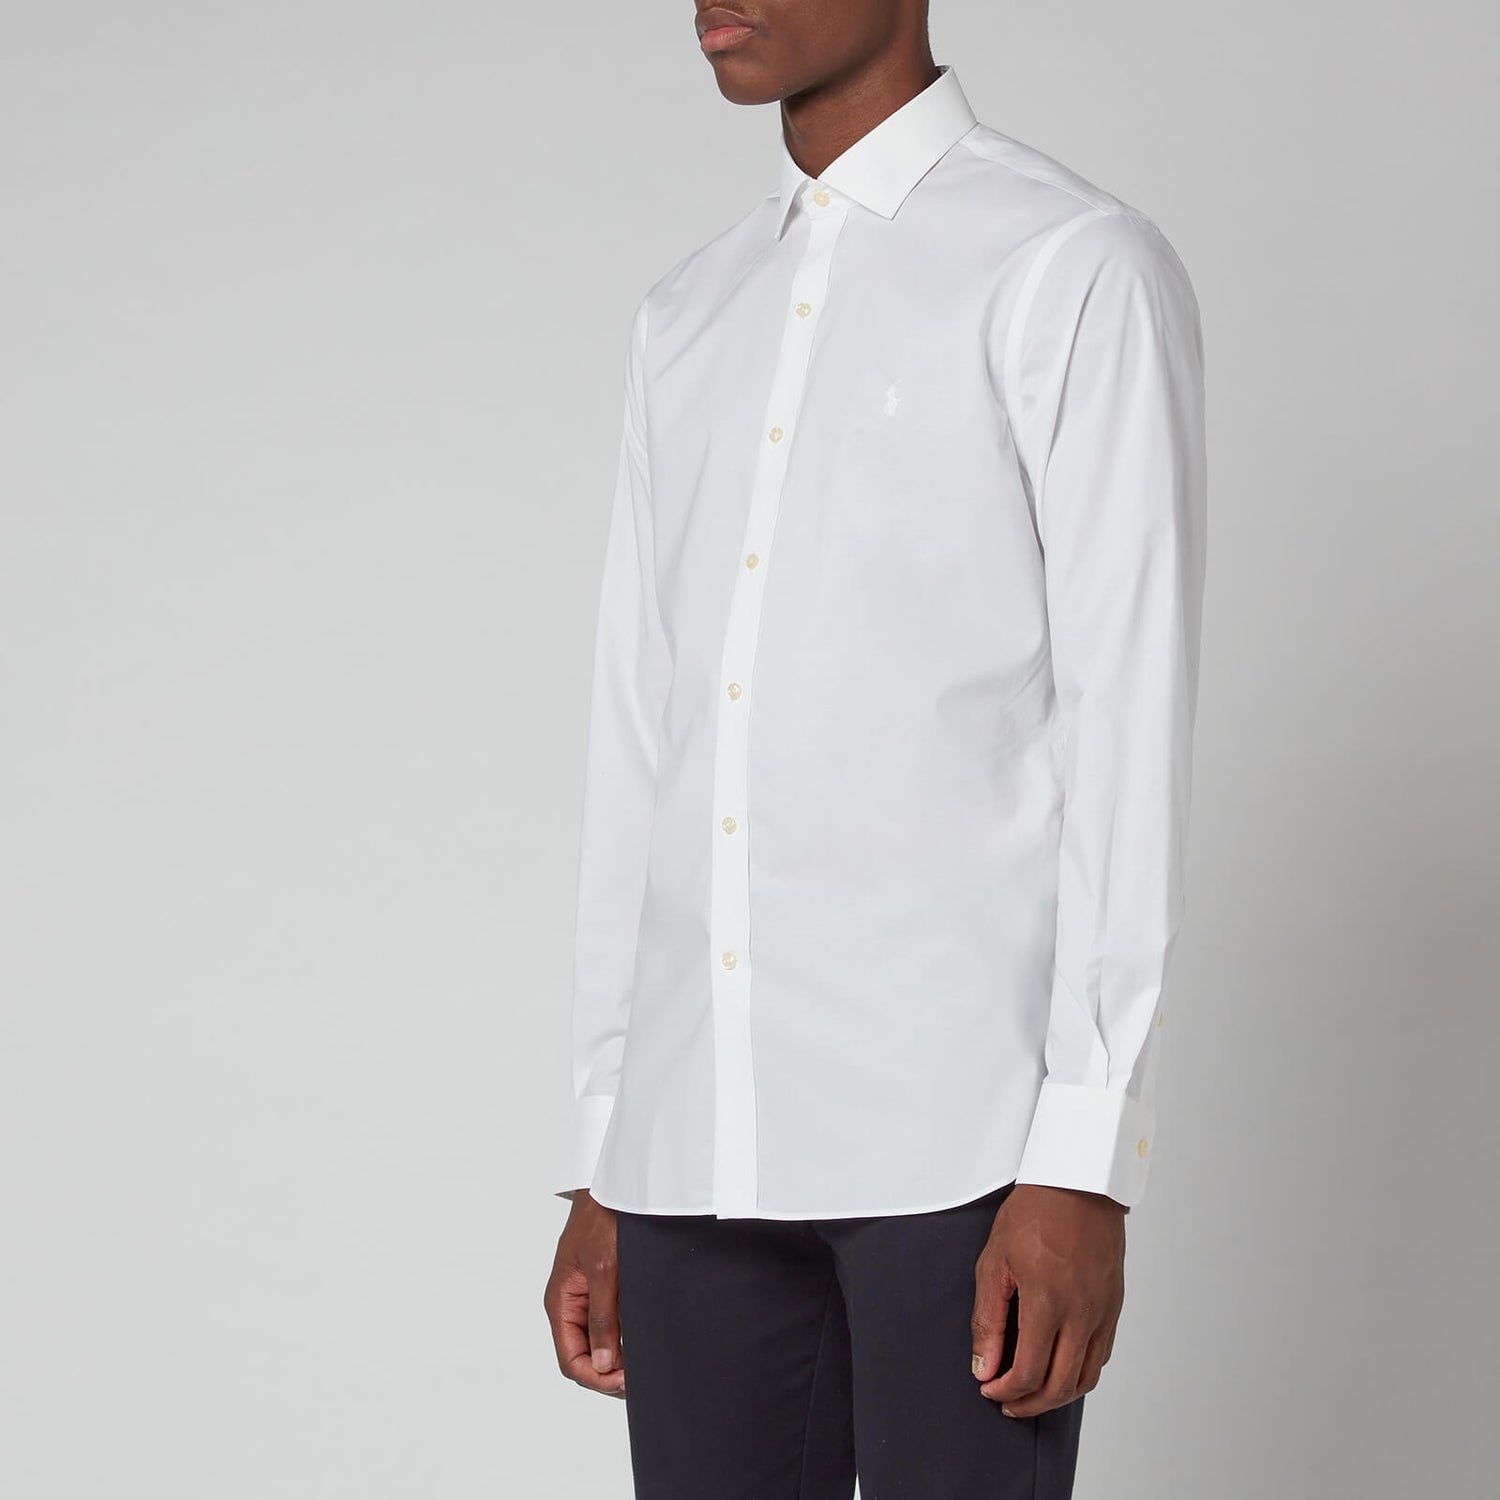 Polo Ralph Lauren Men's Slim Fit Poplin Shirt - White - 15